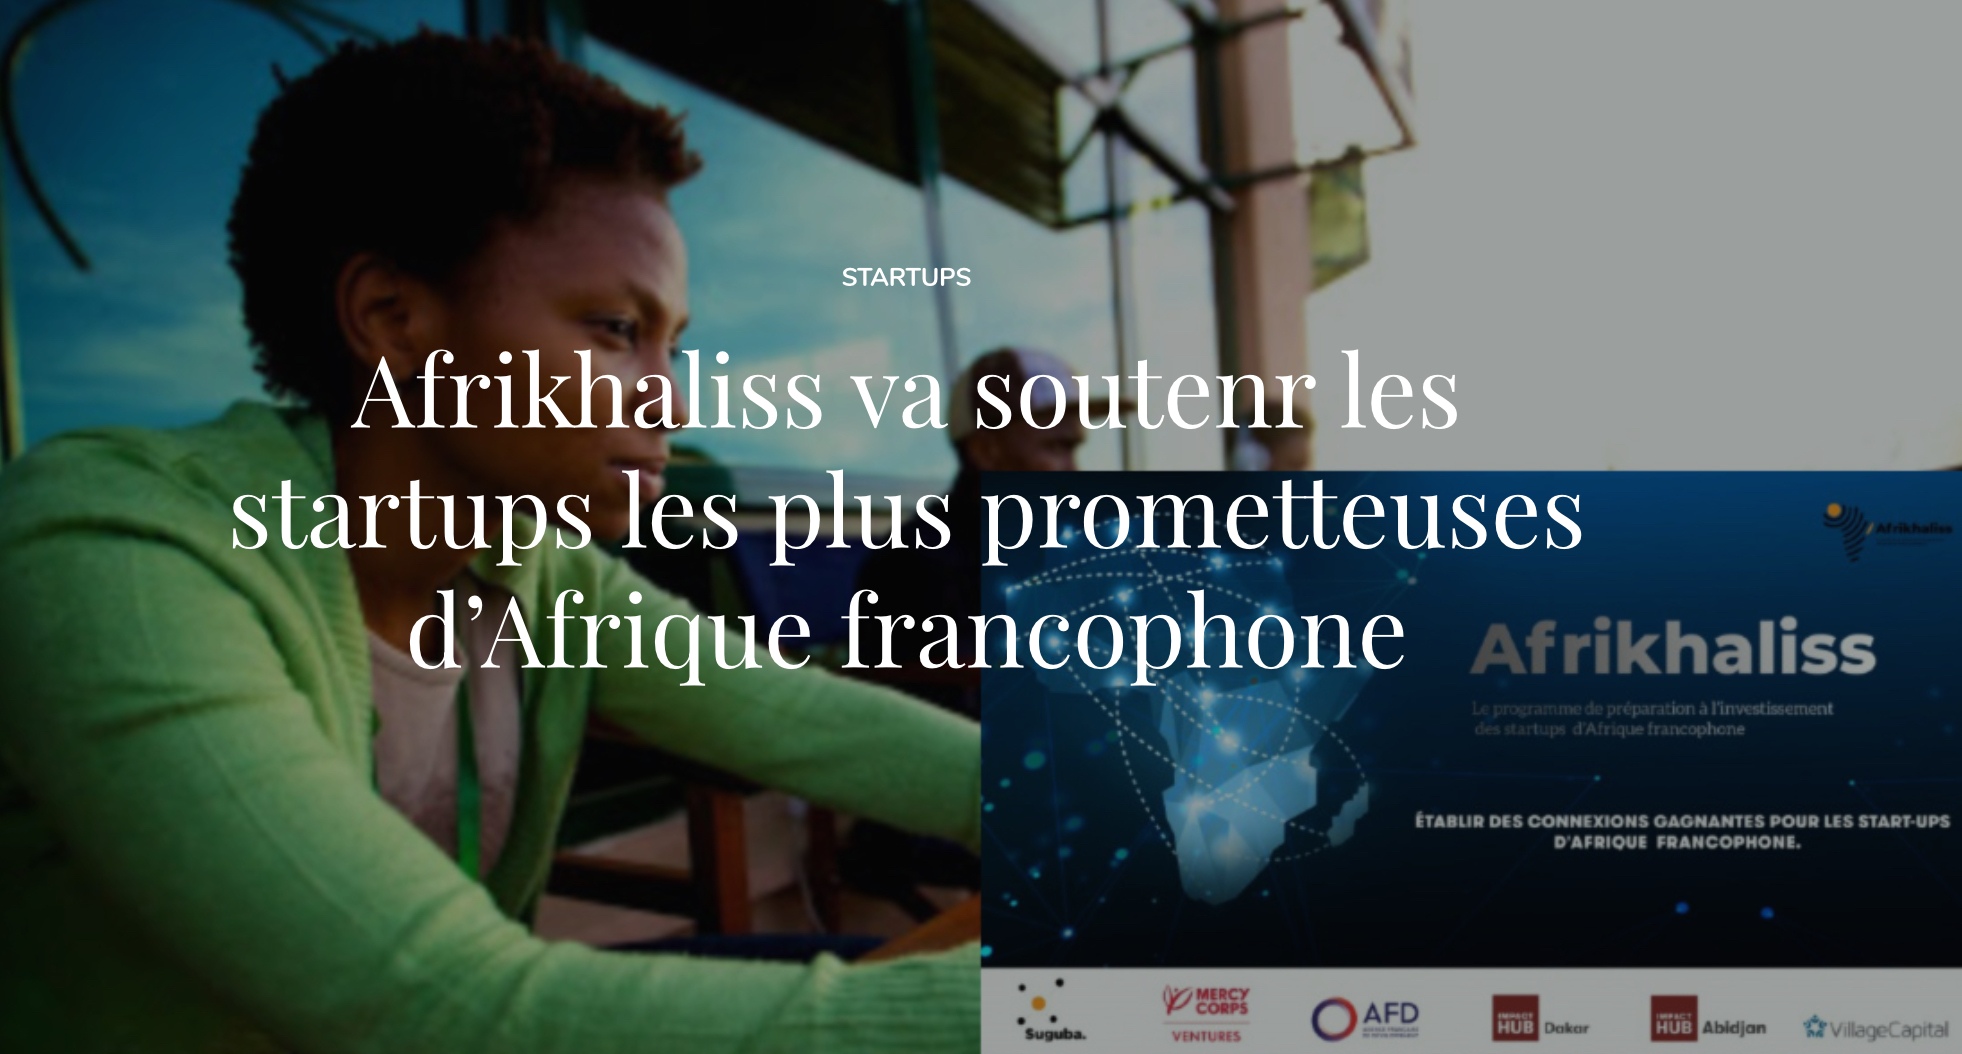 Afrikhaliss va soutenir les start-ups les plus prometteuses d’Afrique francophone